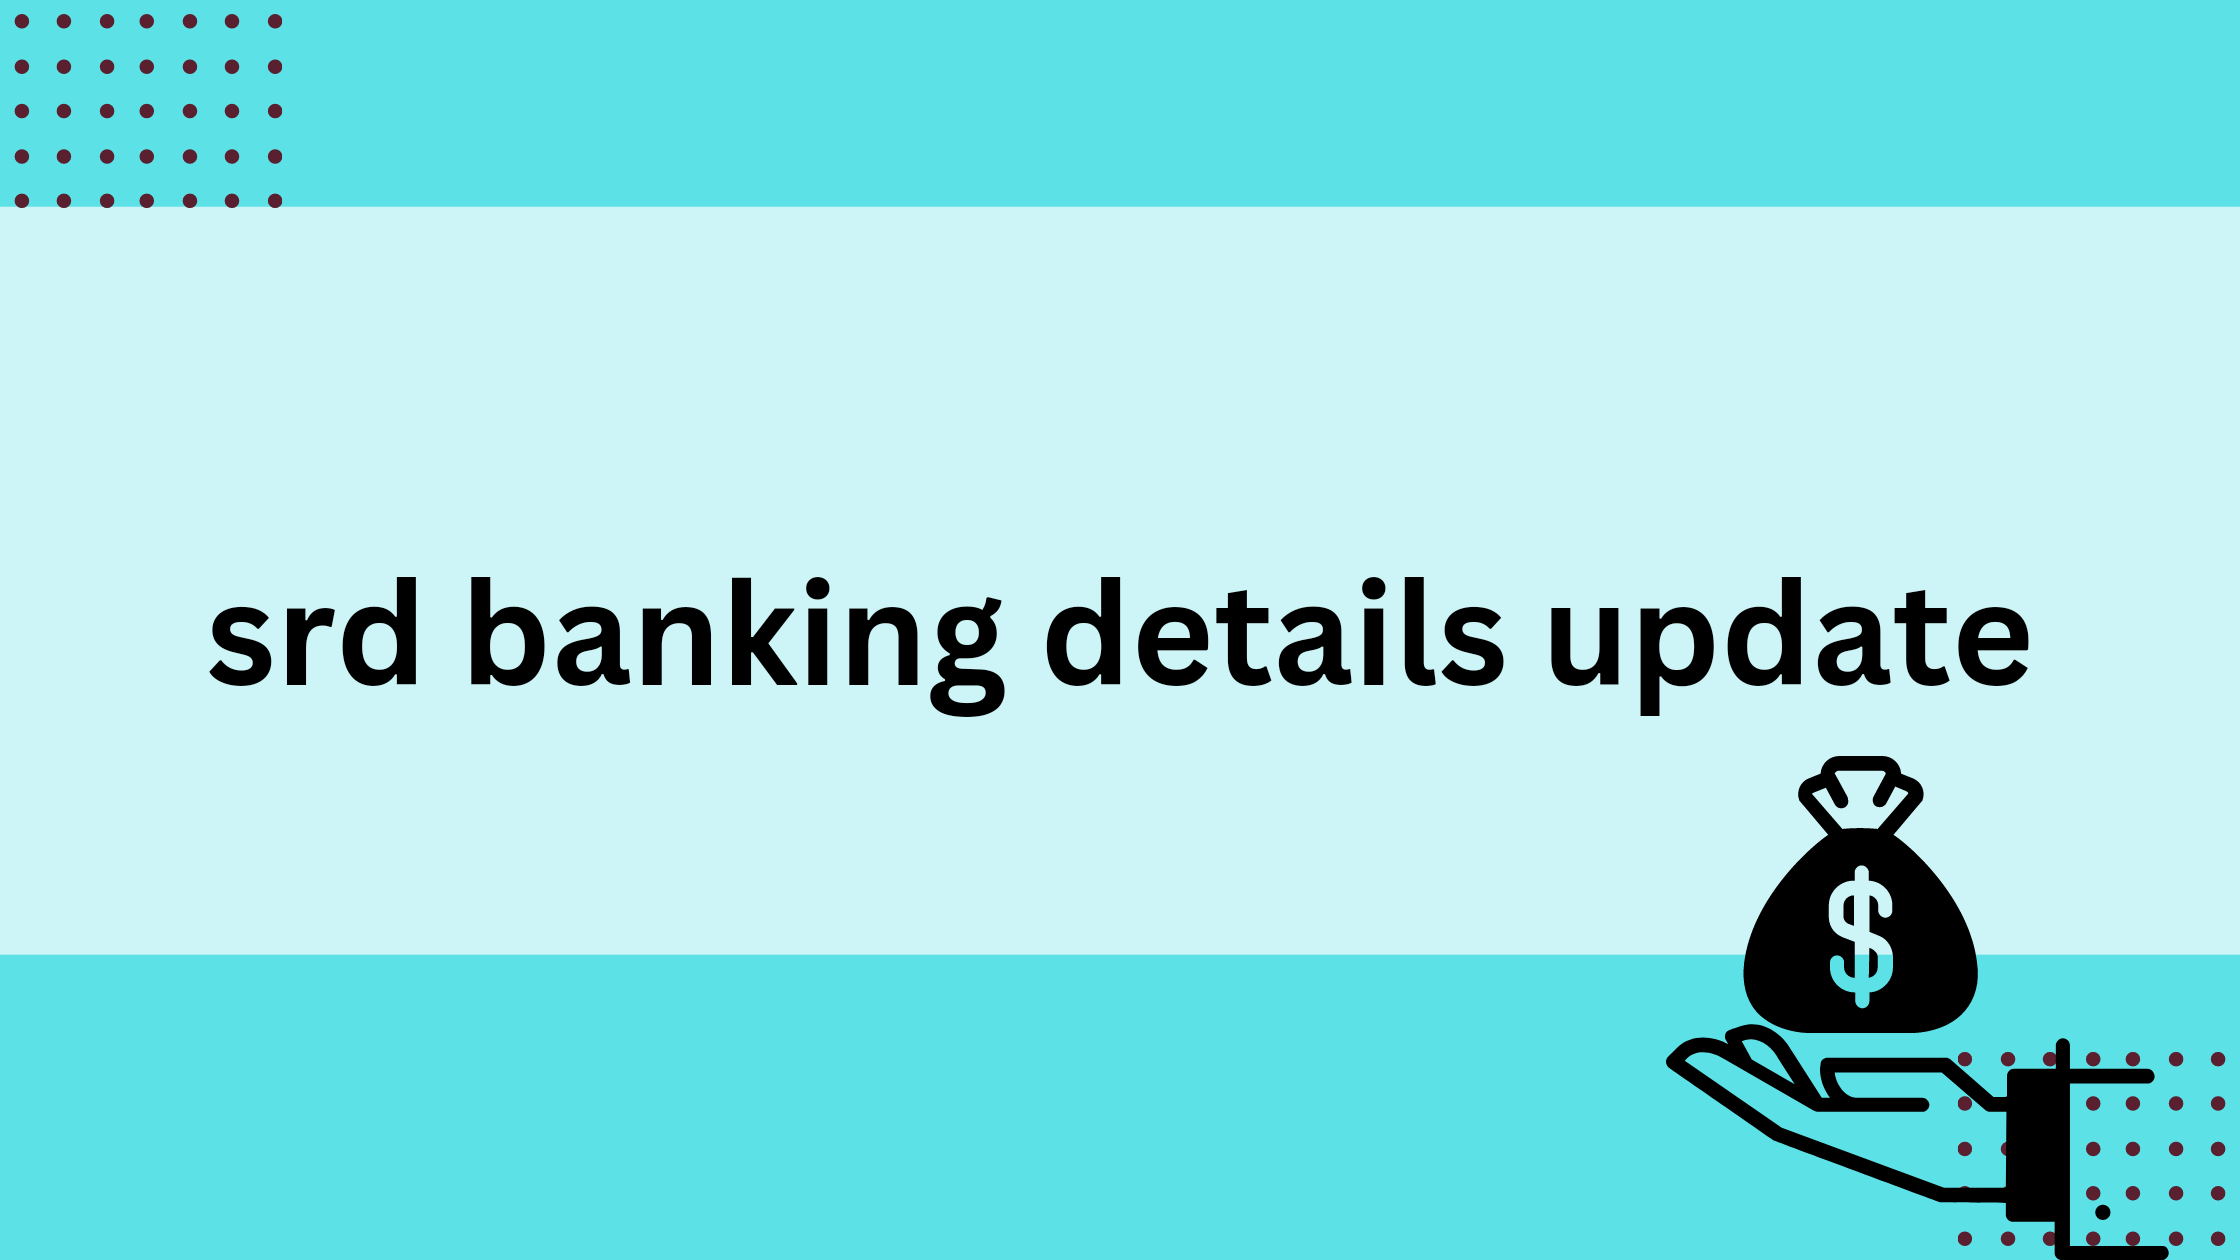 srd banking details update